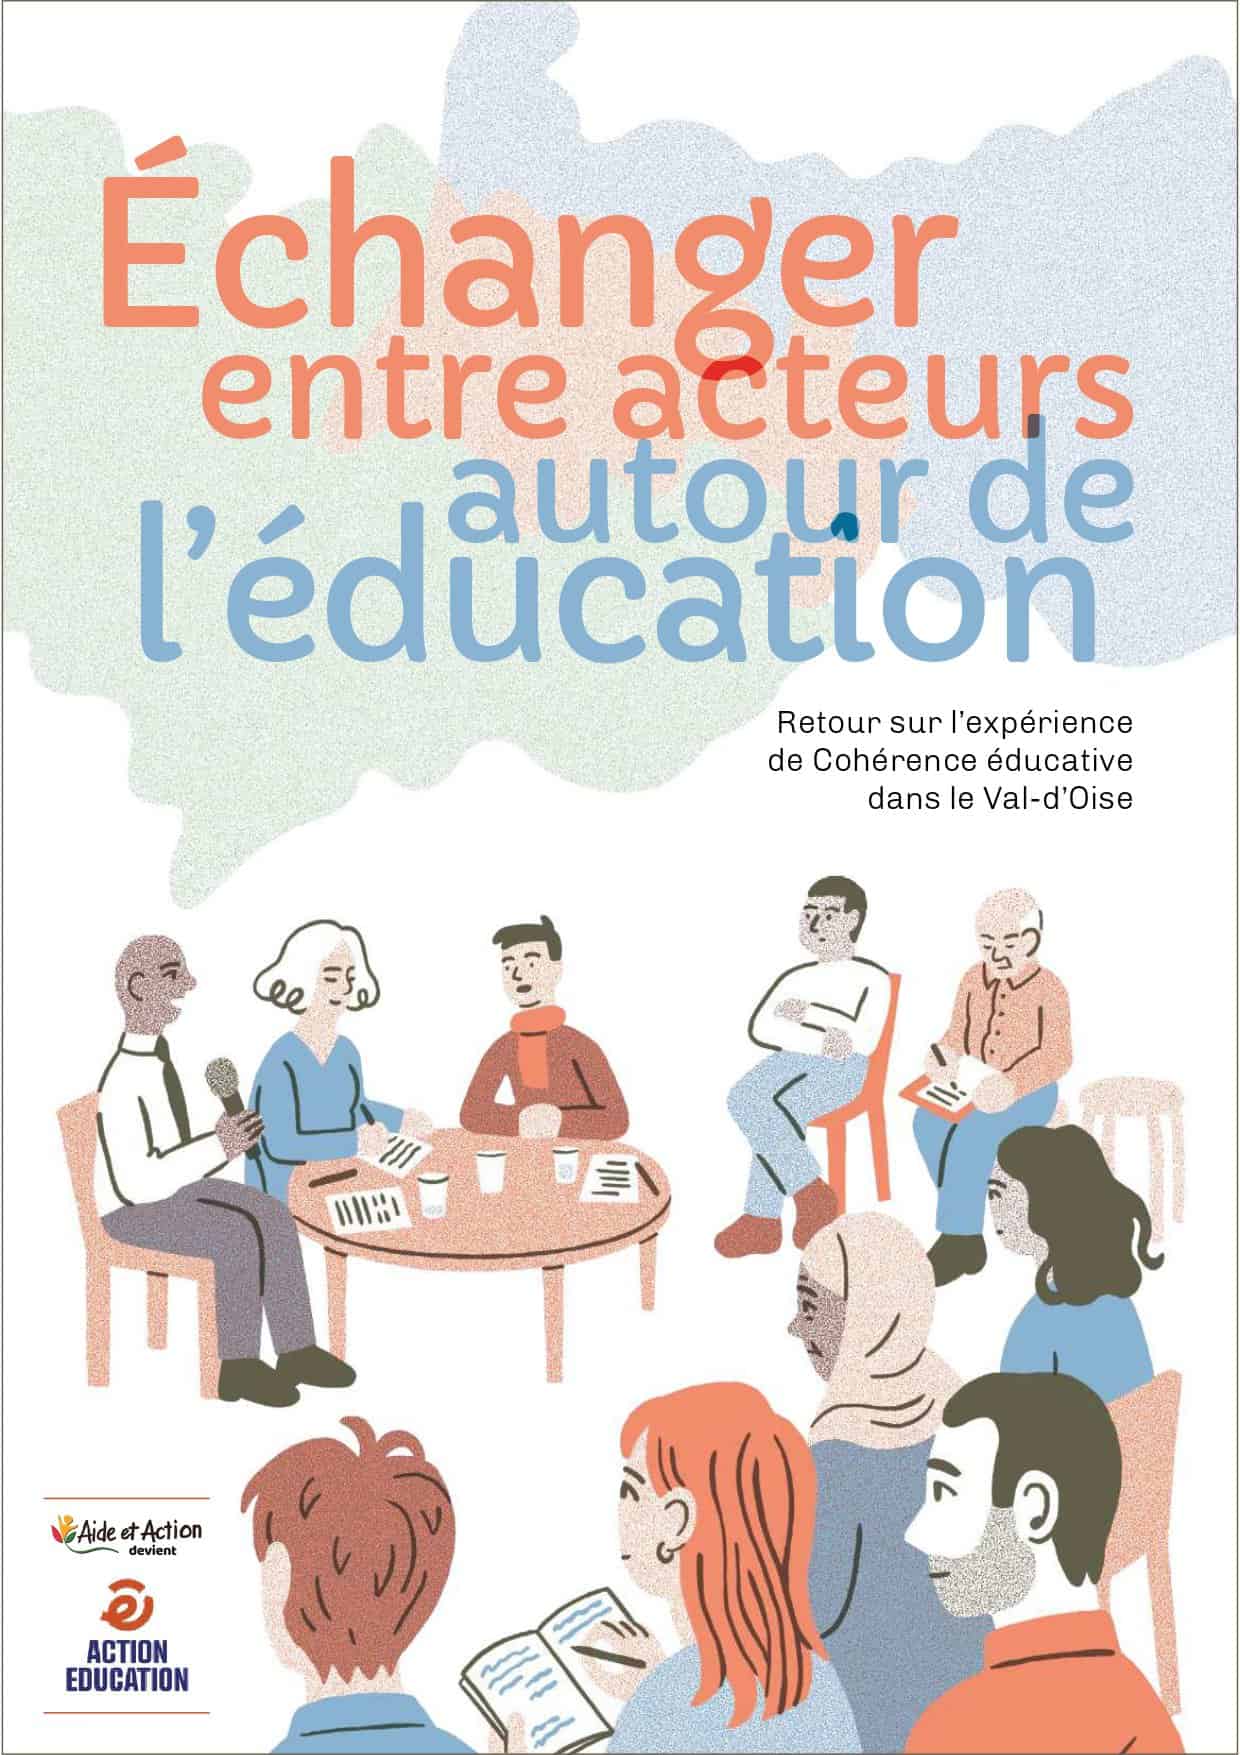 Publication du livret de la Cohérence éducative sur ses 10 ans d’expériences dans le Val d’Oise